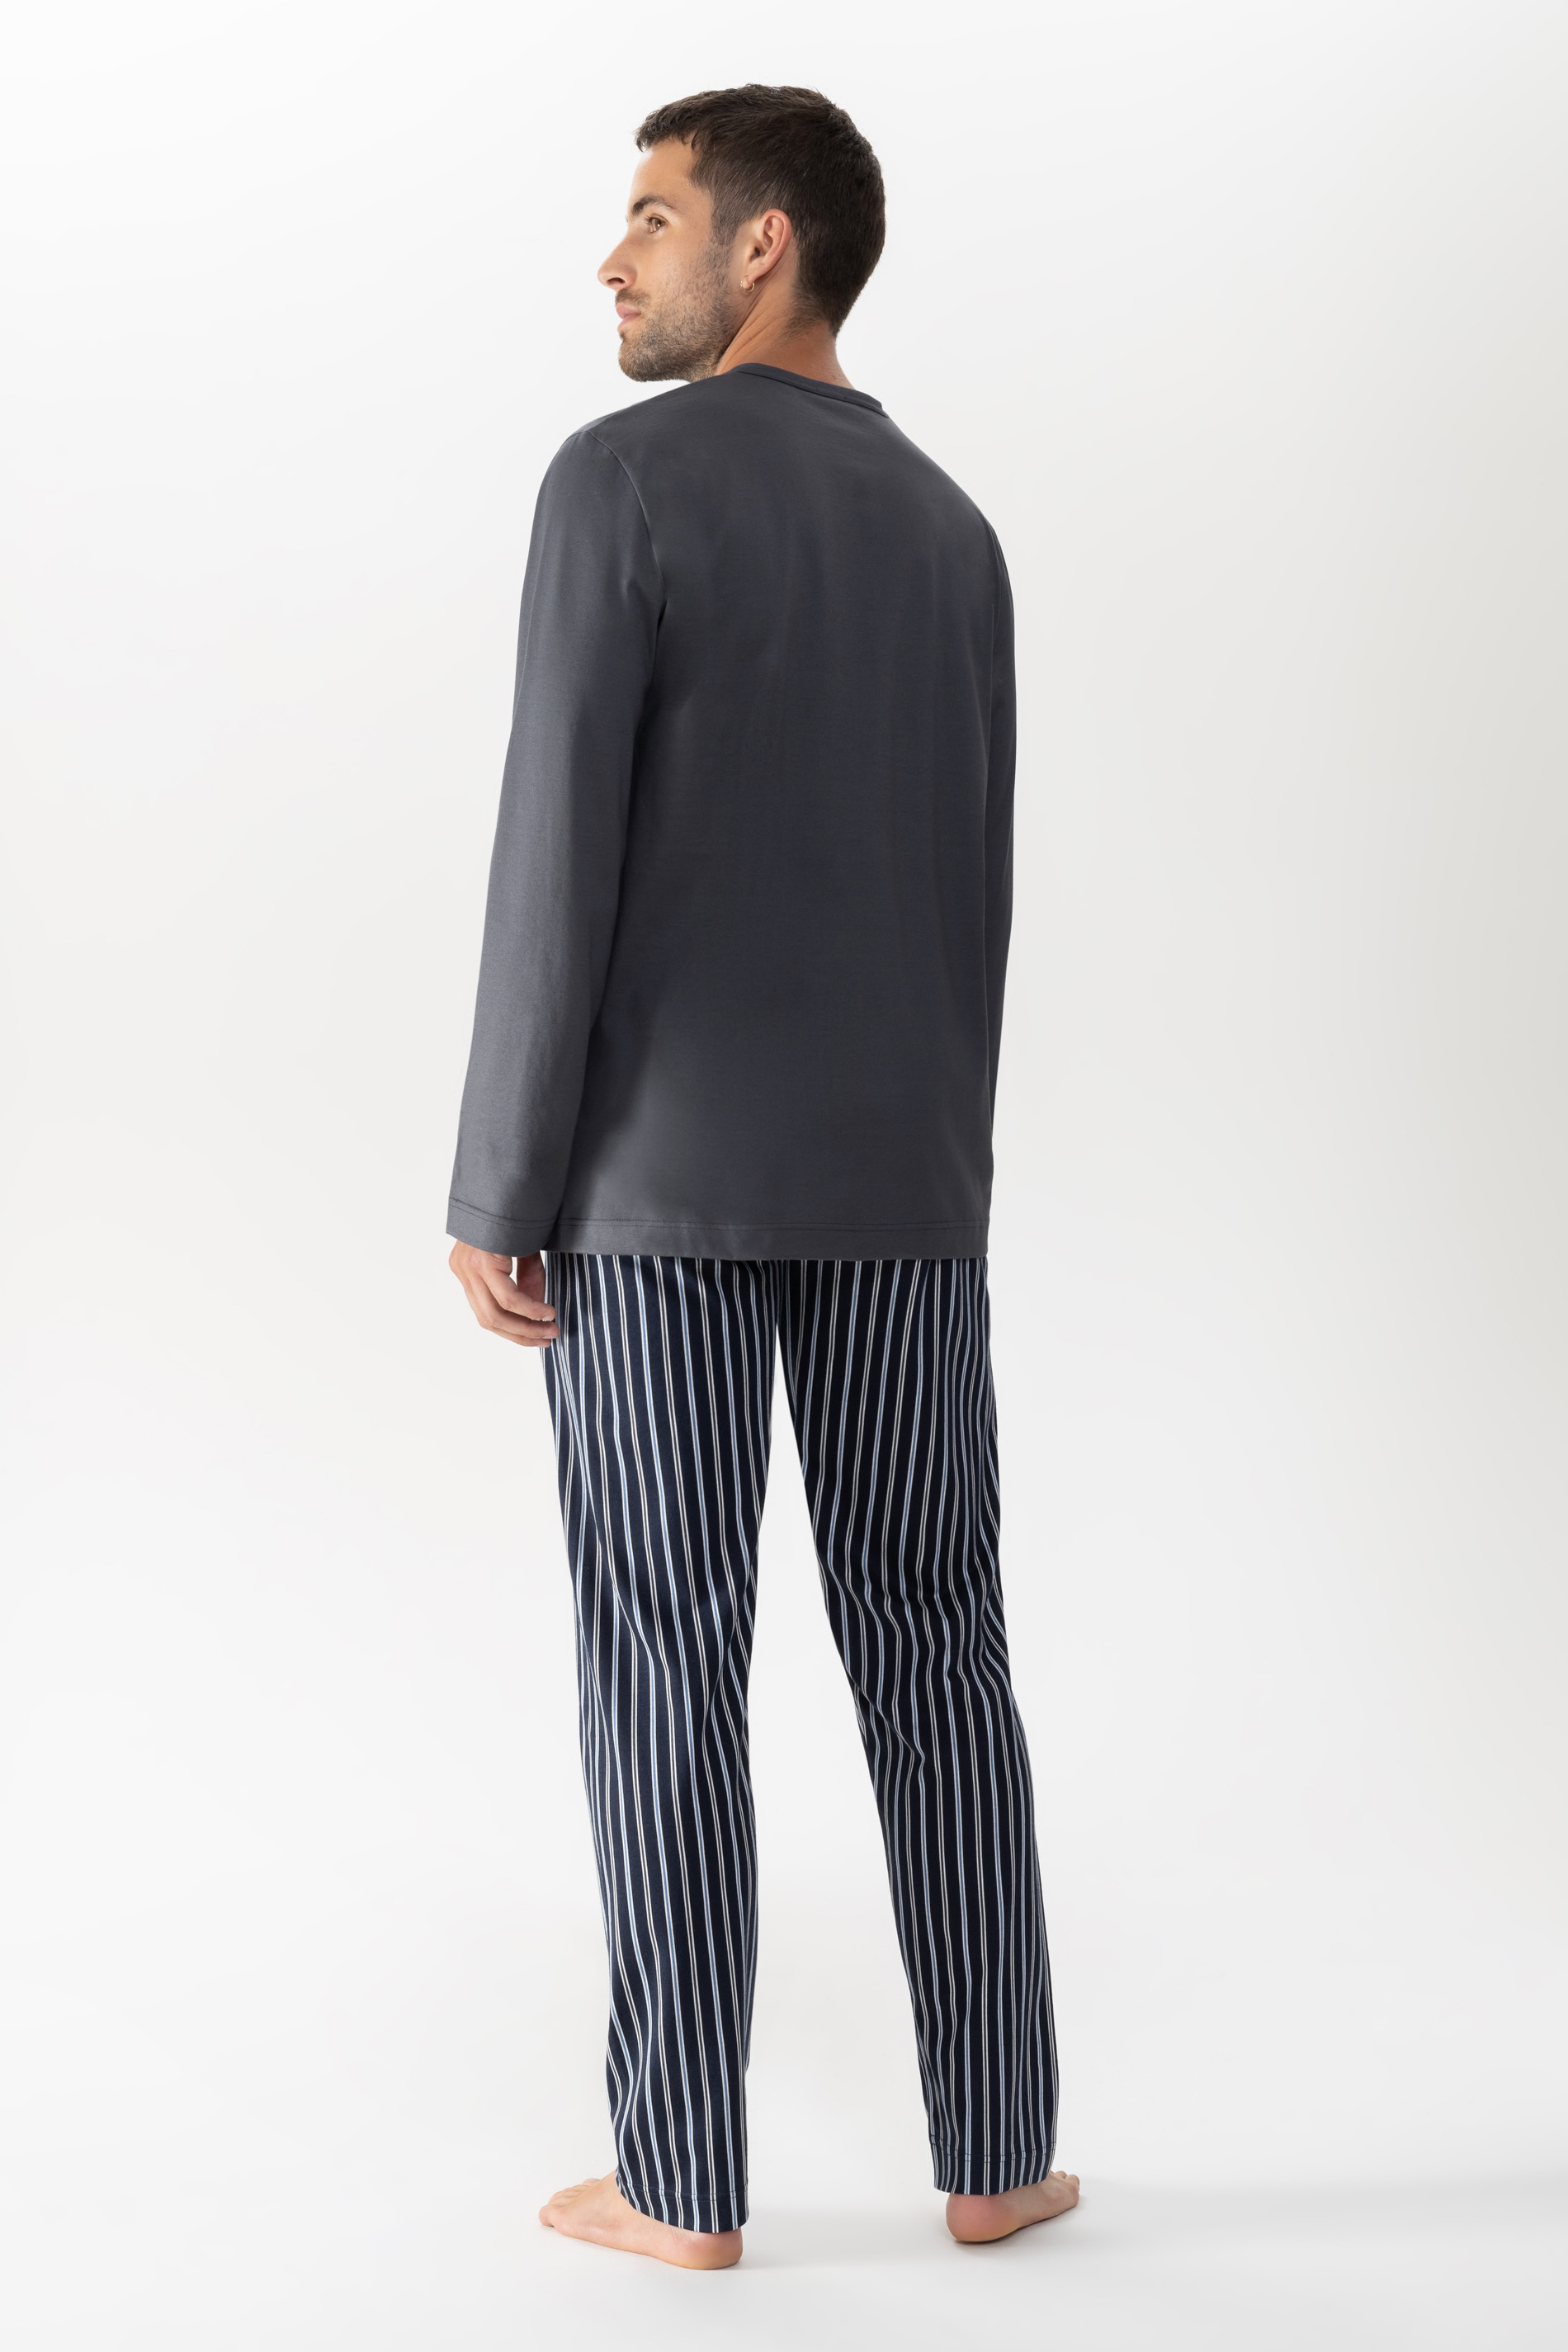 Pyjama Soft Grey Serie Portimo Rear View | mey®